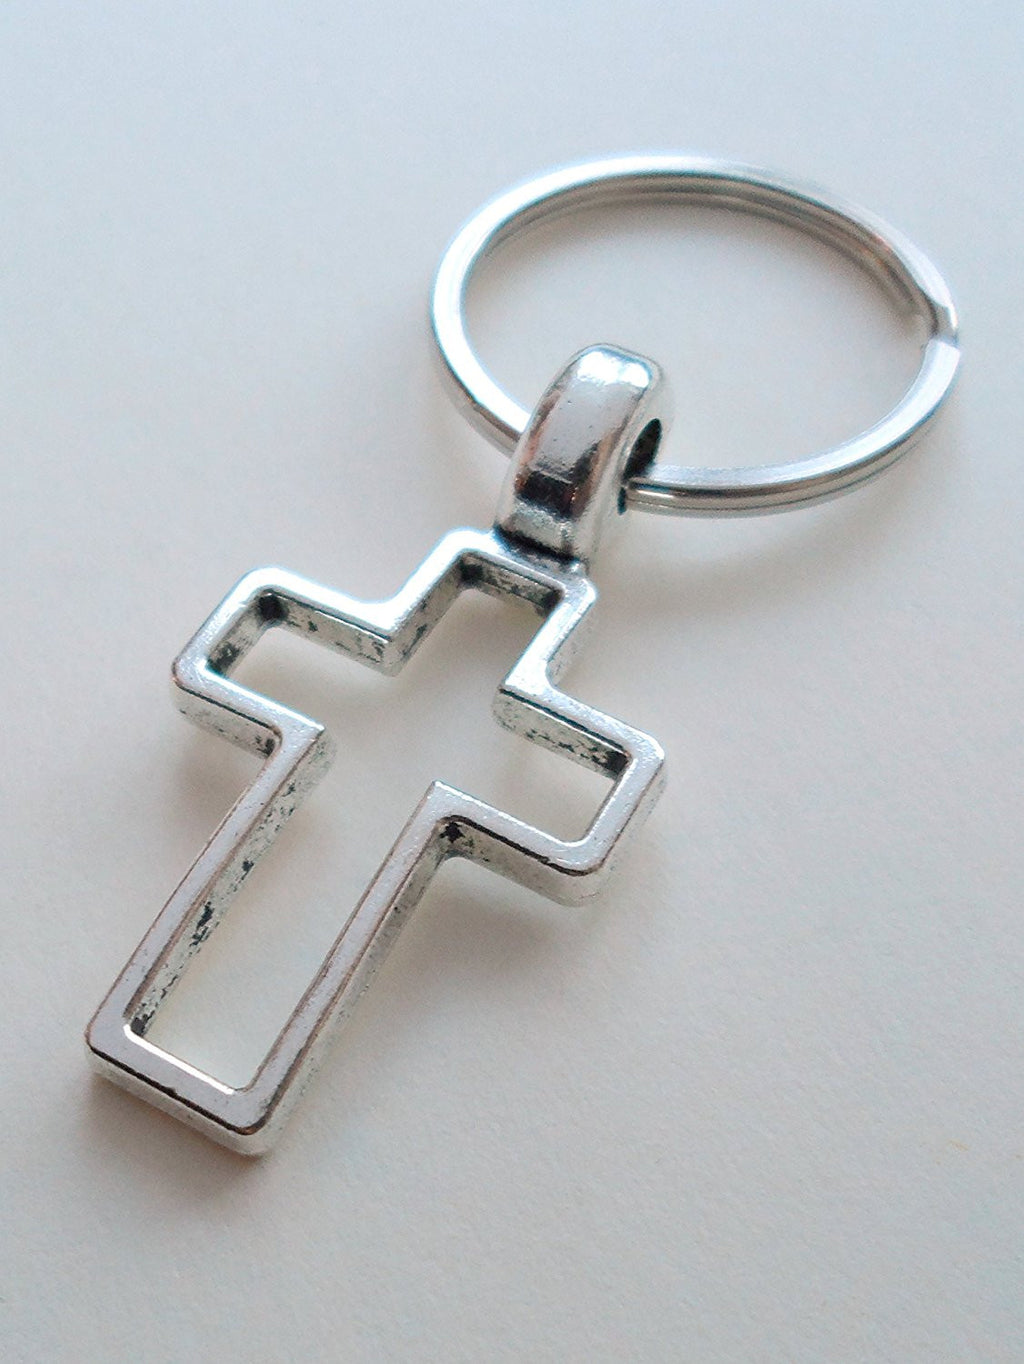 Small Cross Keychain, Religious Keychain